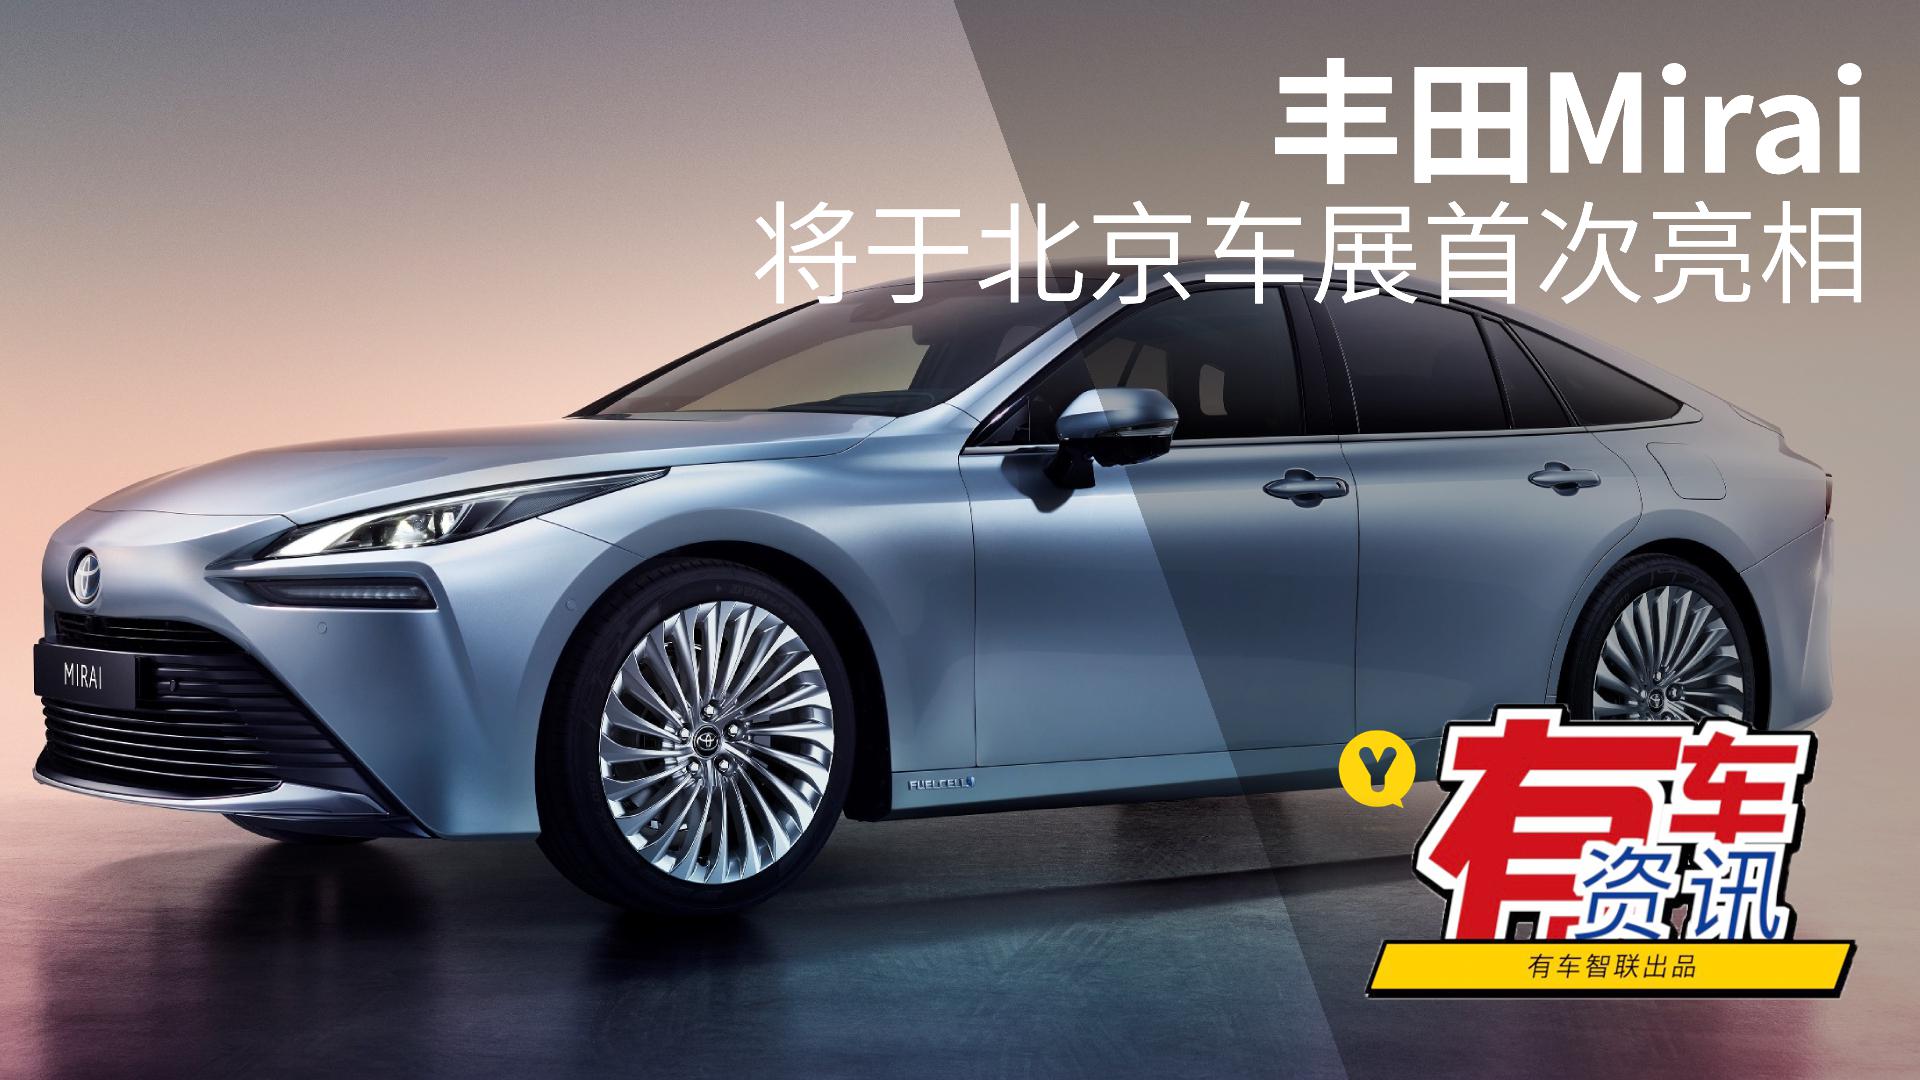 首款量产氢燃料电池汽车 丰田Mirai 将于北京车展首次亮相